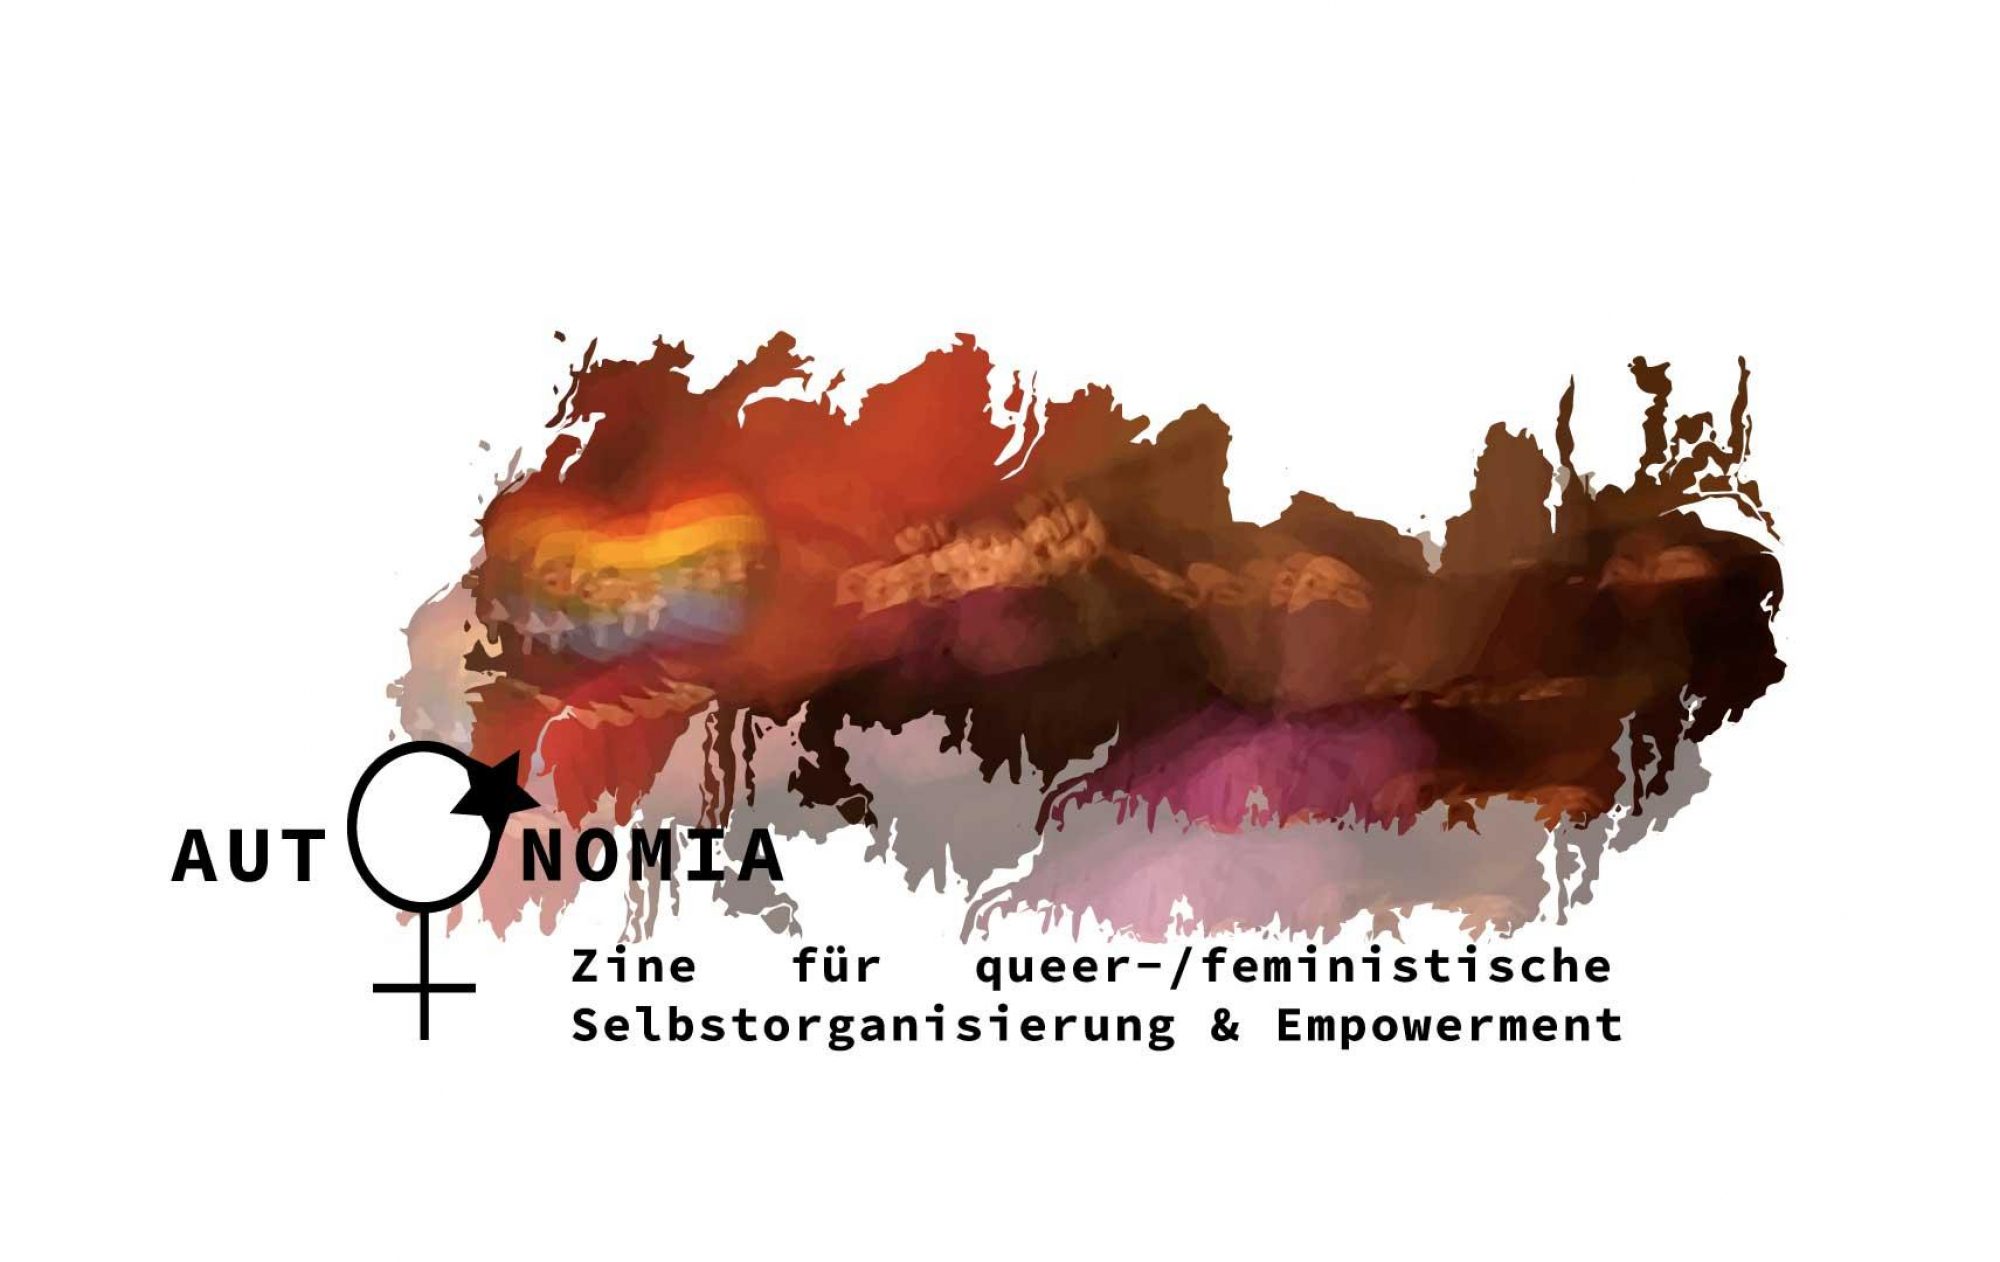 Zine für queer-/feministische Selbstorganisierung & Empowerment